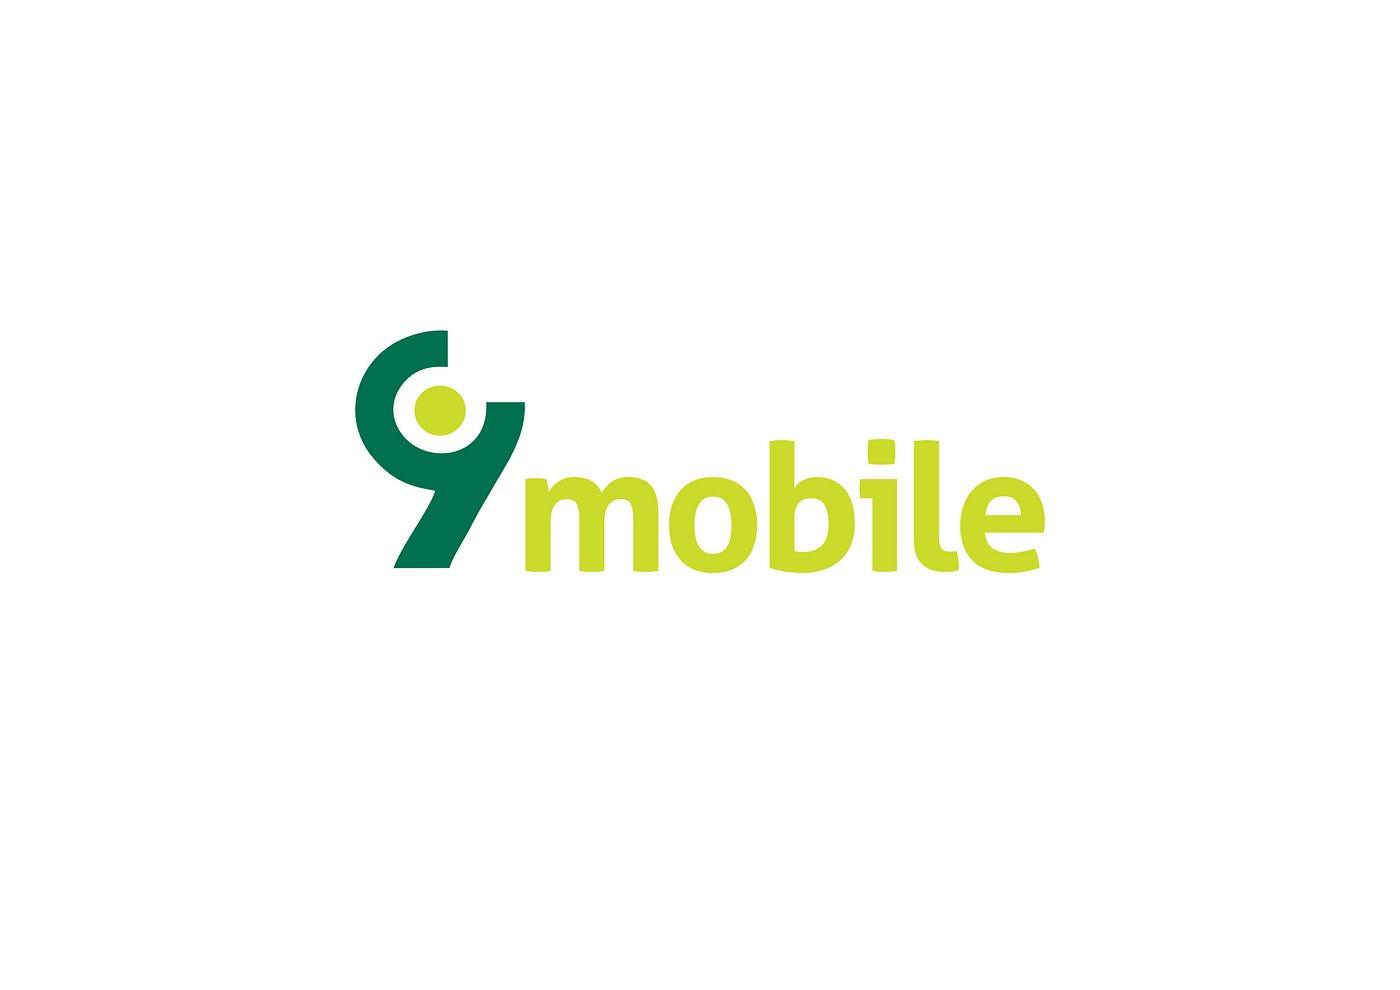 9mobile Logo - 9Mobile logo | by Victor A. Fatanmi ...